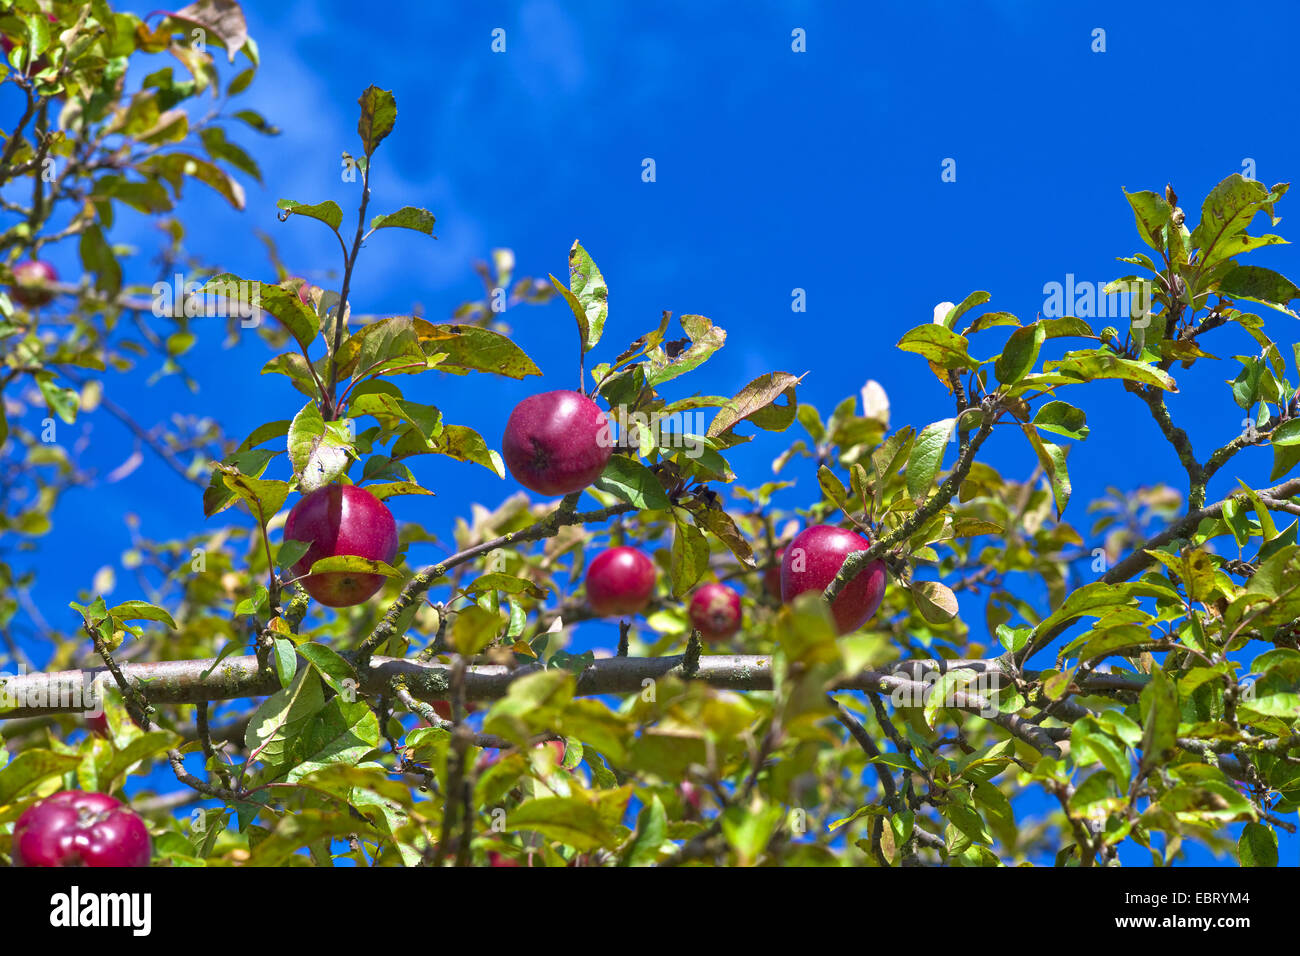 apple tree (Malus domestica 'Gloster', Malus domestica Gloster), apples of cultivar Gloster, Germany Stock Photo